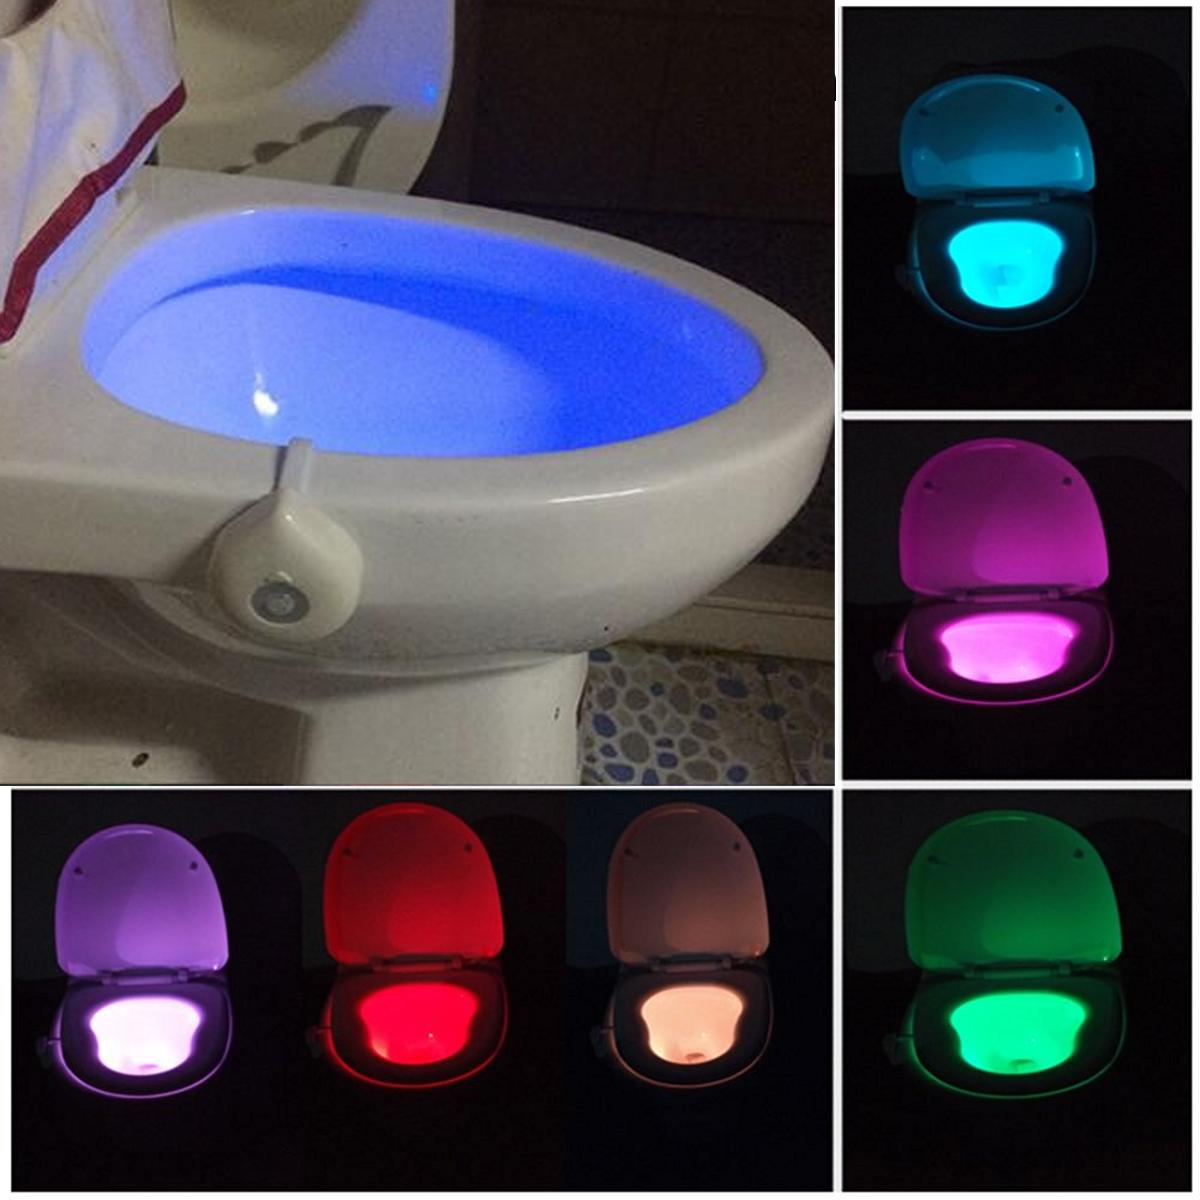 Motion Activated Toilet Night Light, Best Motion Sensor Light For Bathroom